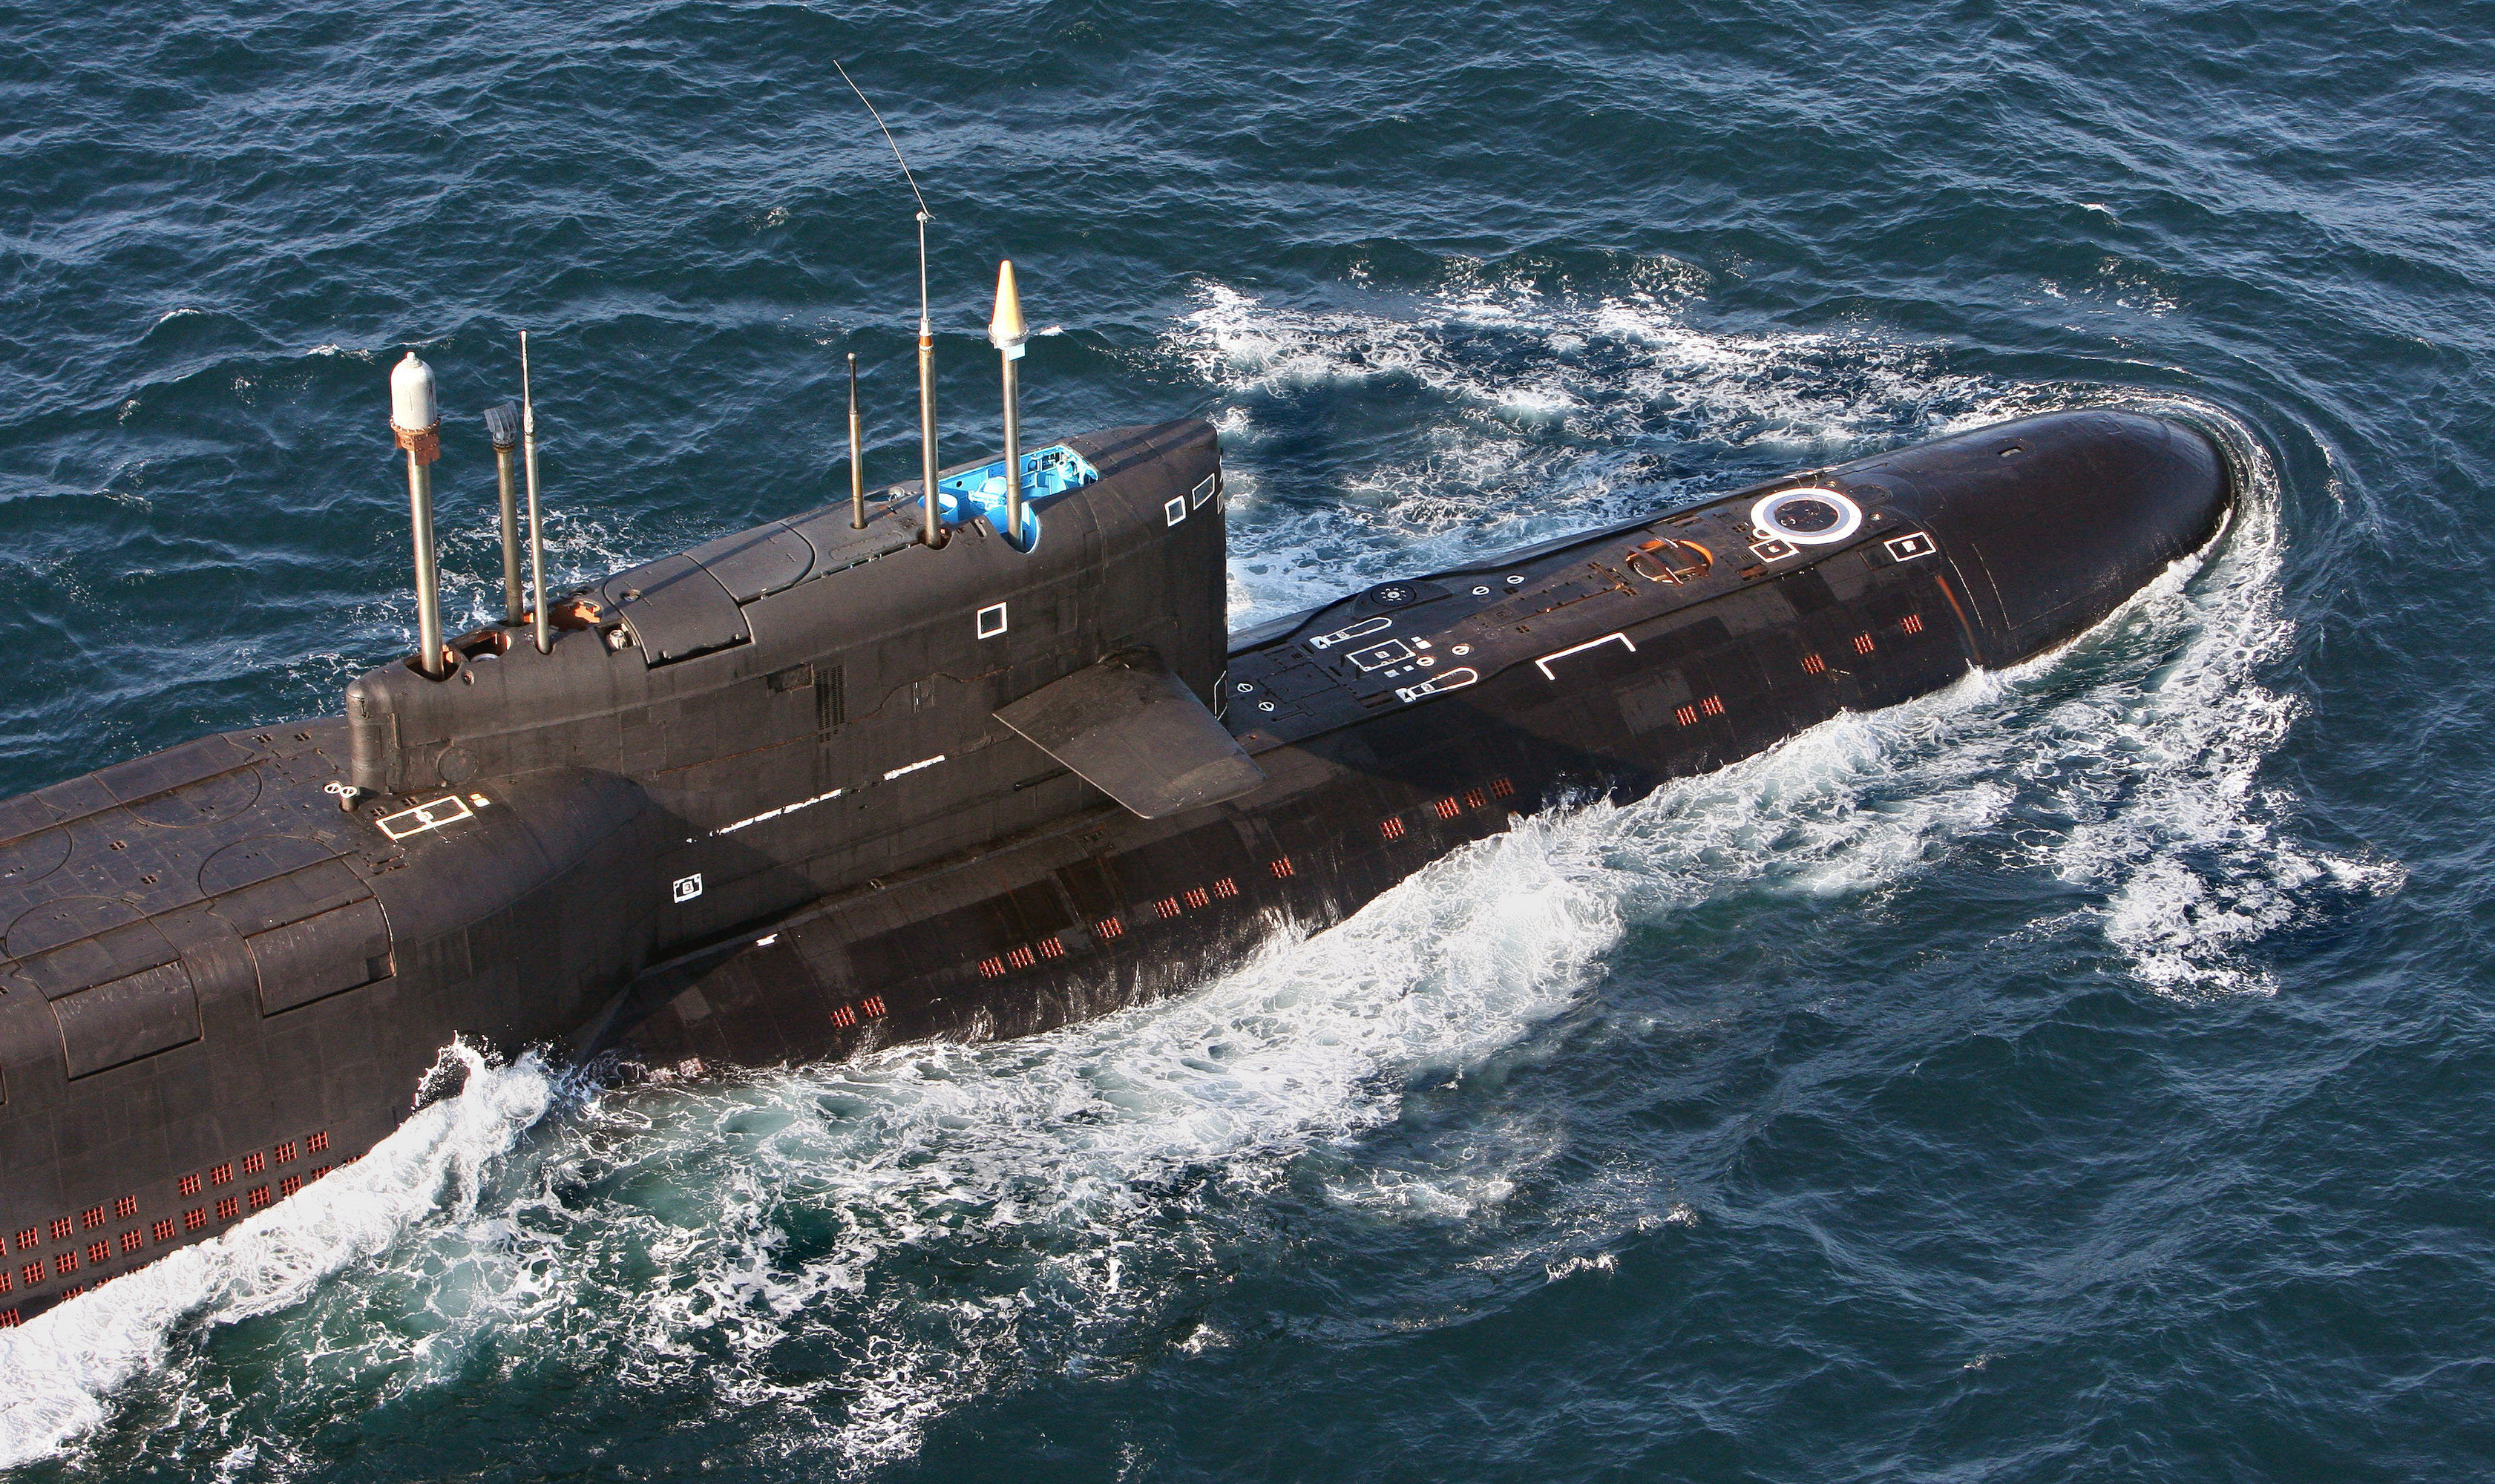 Мировой подводный флот. 667 БДРМ подводная лодка. Российская атомная подводная лодка. Подводные лодки проекта 667бдрм «Дельфин». РПКСН 667 БДРМ.